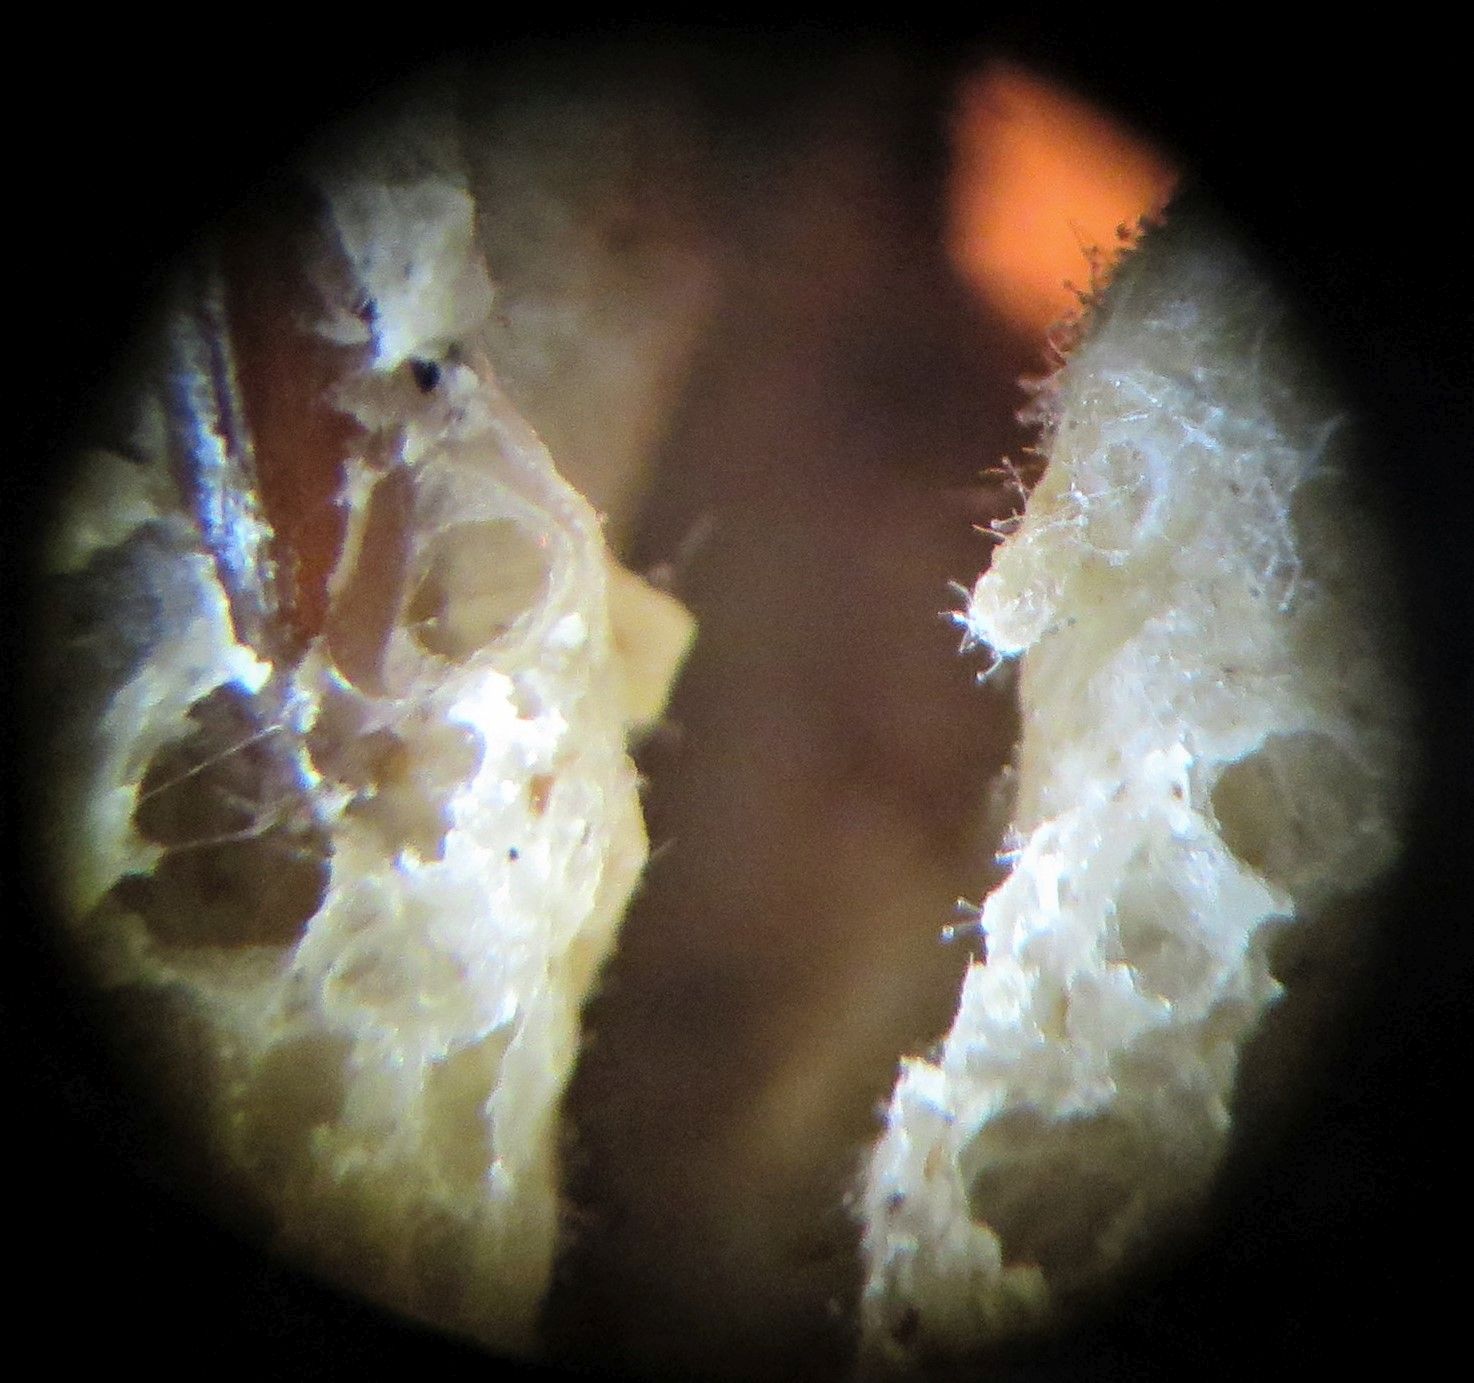 Brotkrume mit Oberfläche eines Schimmelpilzgeflechts sowie fadenartigen Strukturen